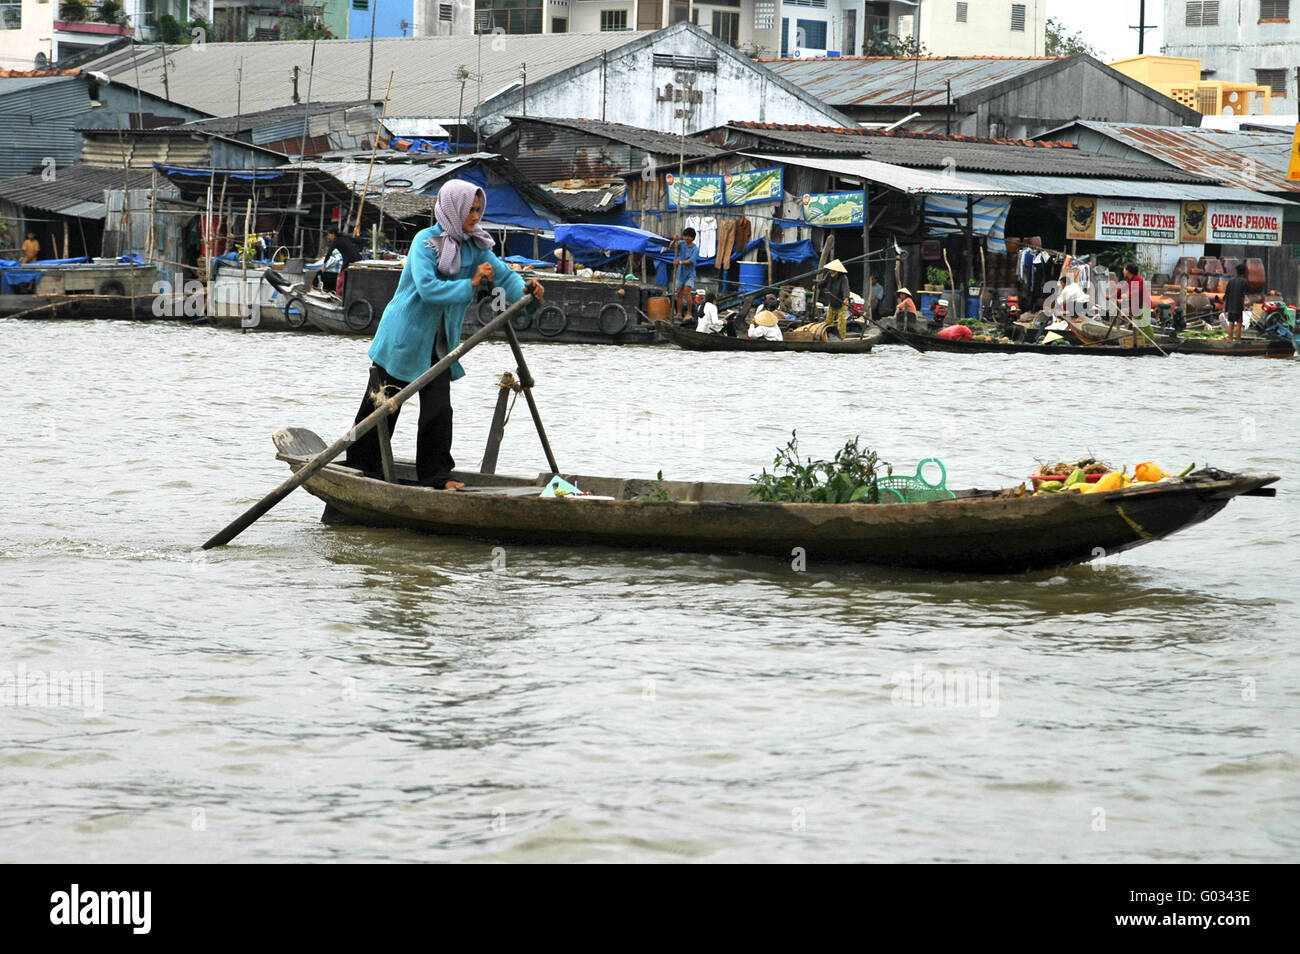 Sur le chemin de la marché flottant de Cai Rang, Vietnam Banque D'Images